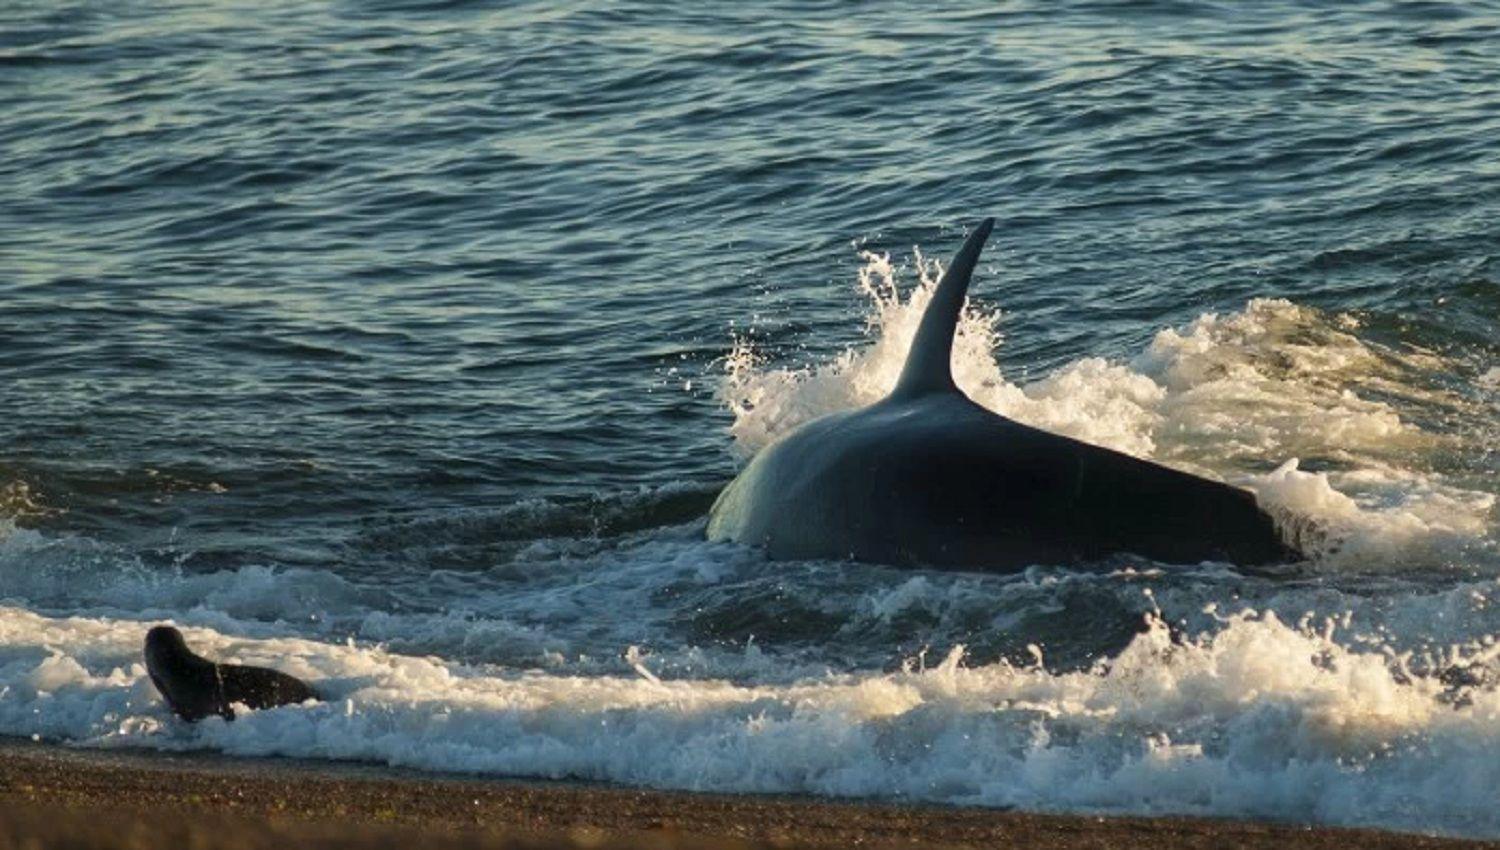 Llegaron las orcas a Valdeacutes- asiacute es su peligrosa taacutectica de caza uacutenica en el mundo